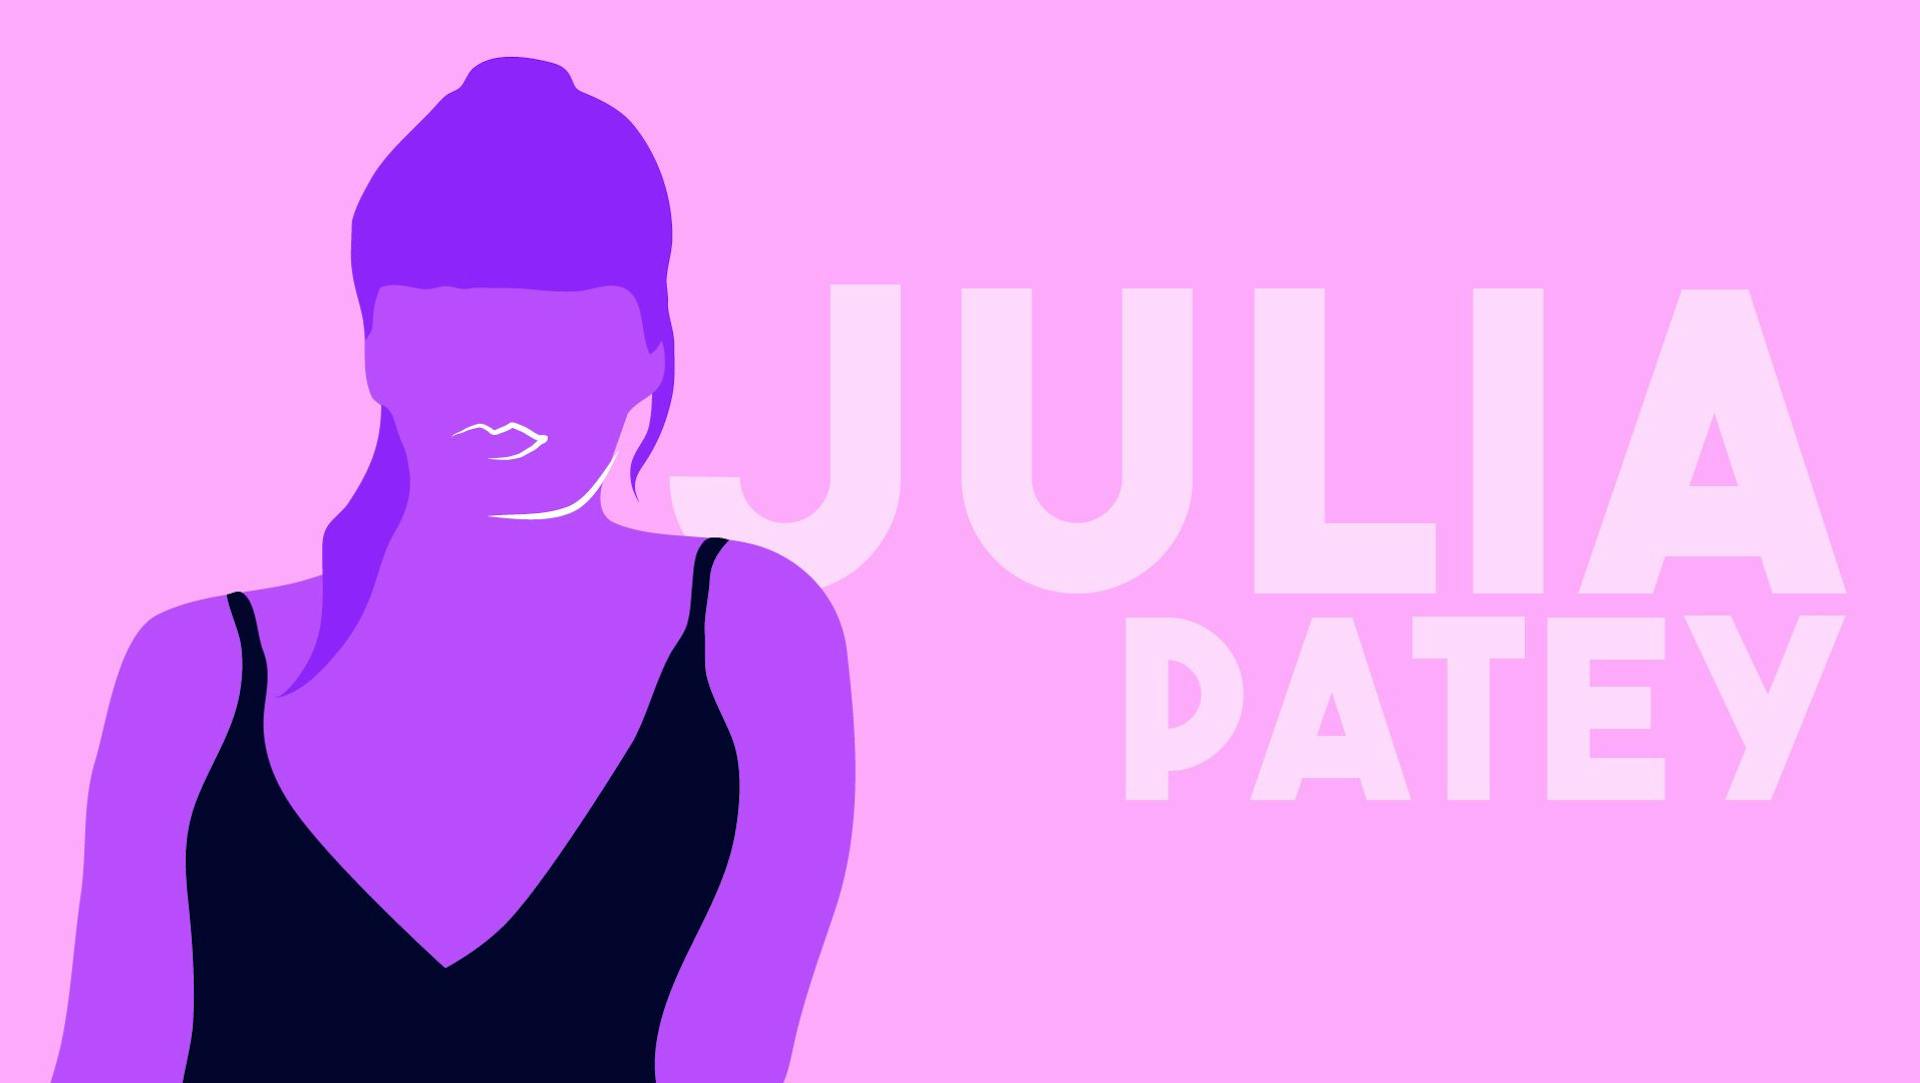 Julia Patey - Director Video